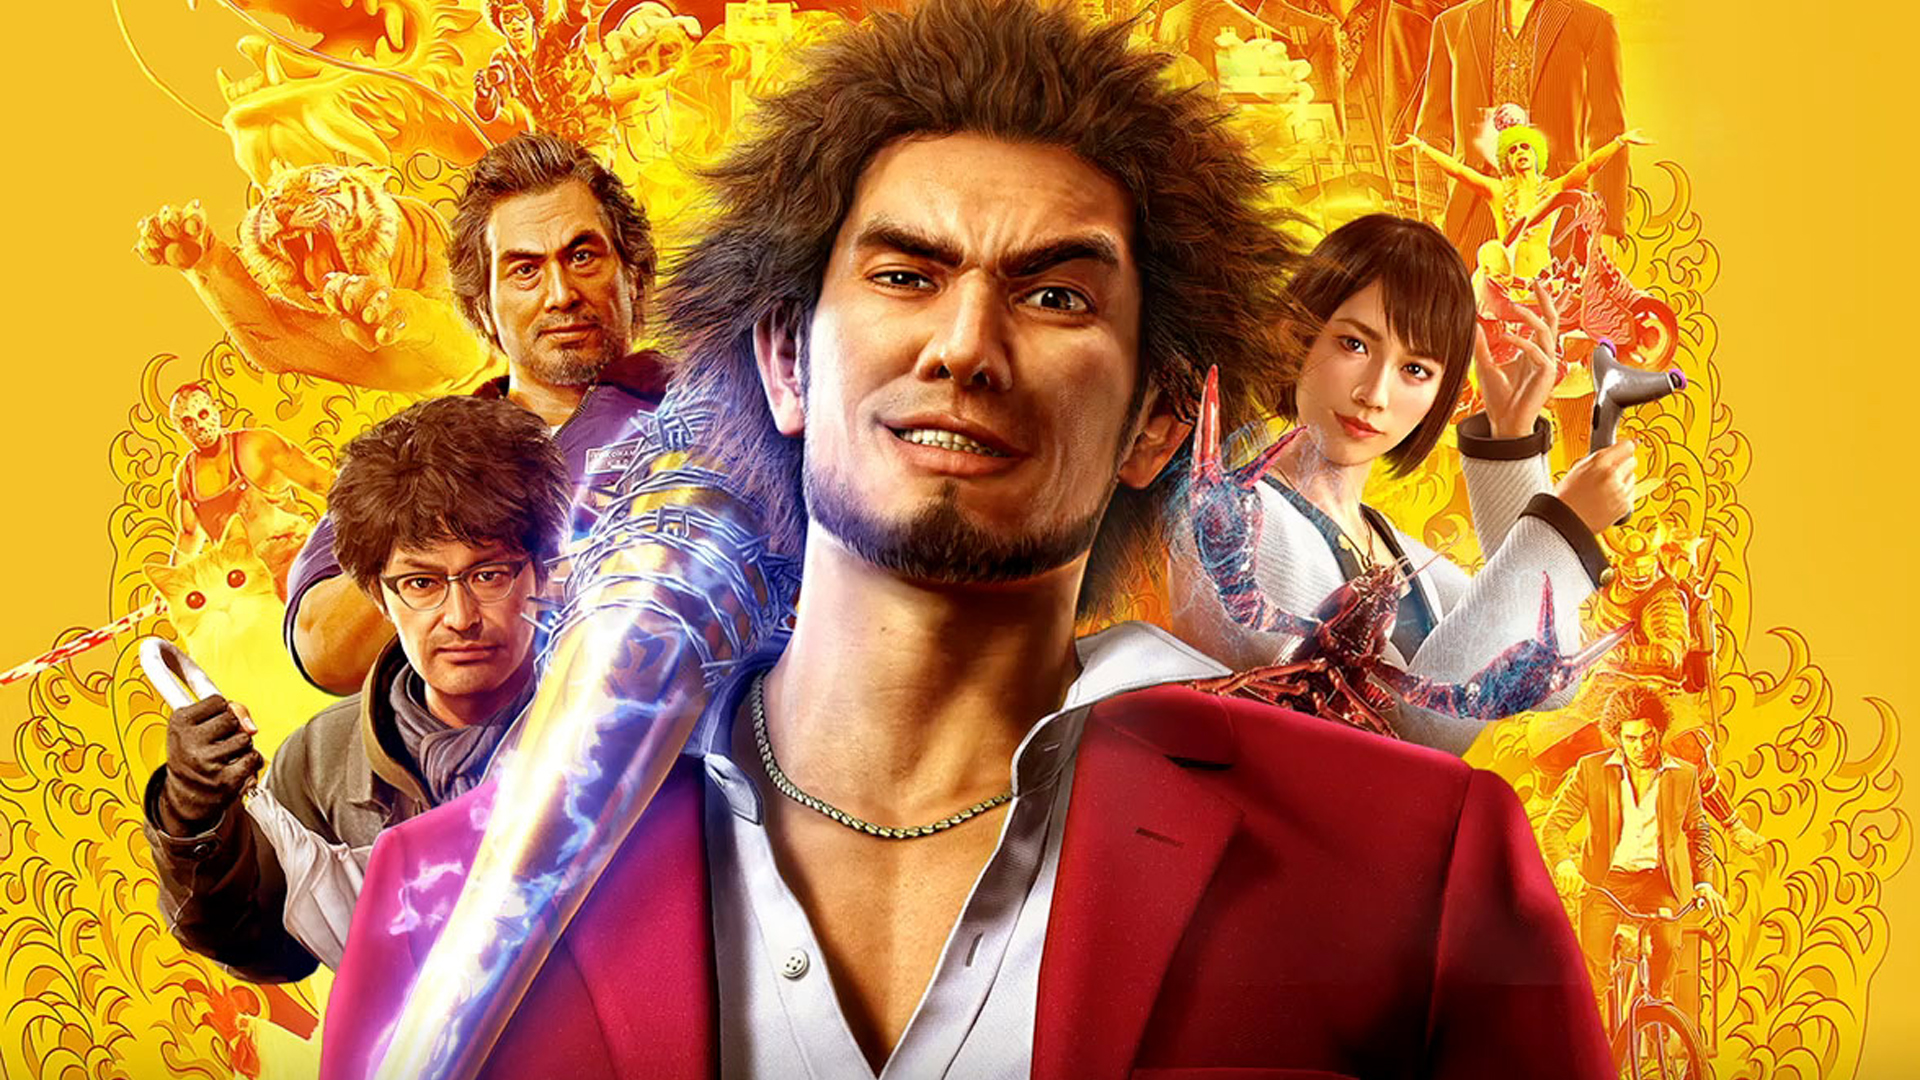 Yakuza on PC has sold around 2.8 million copies